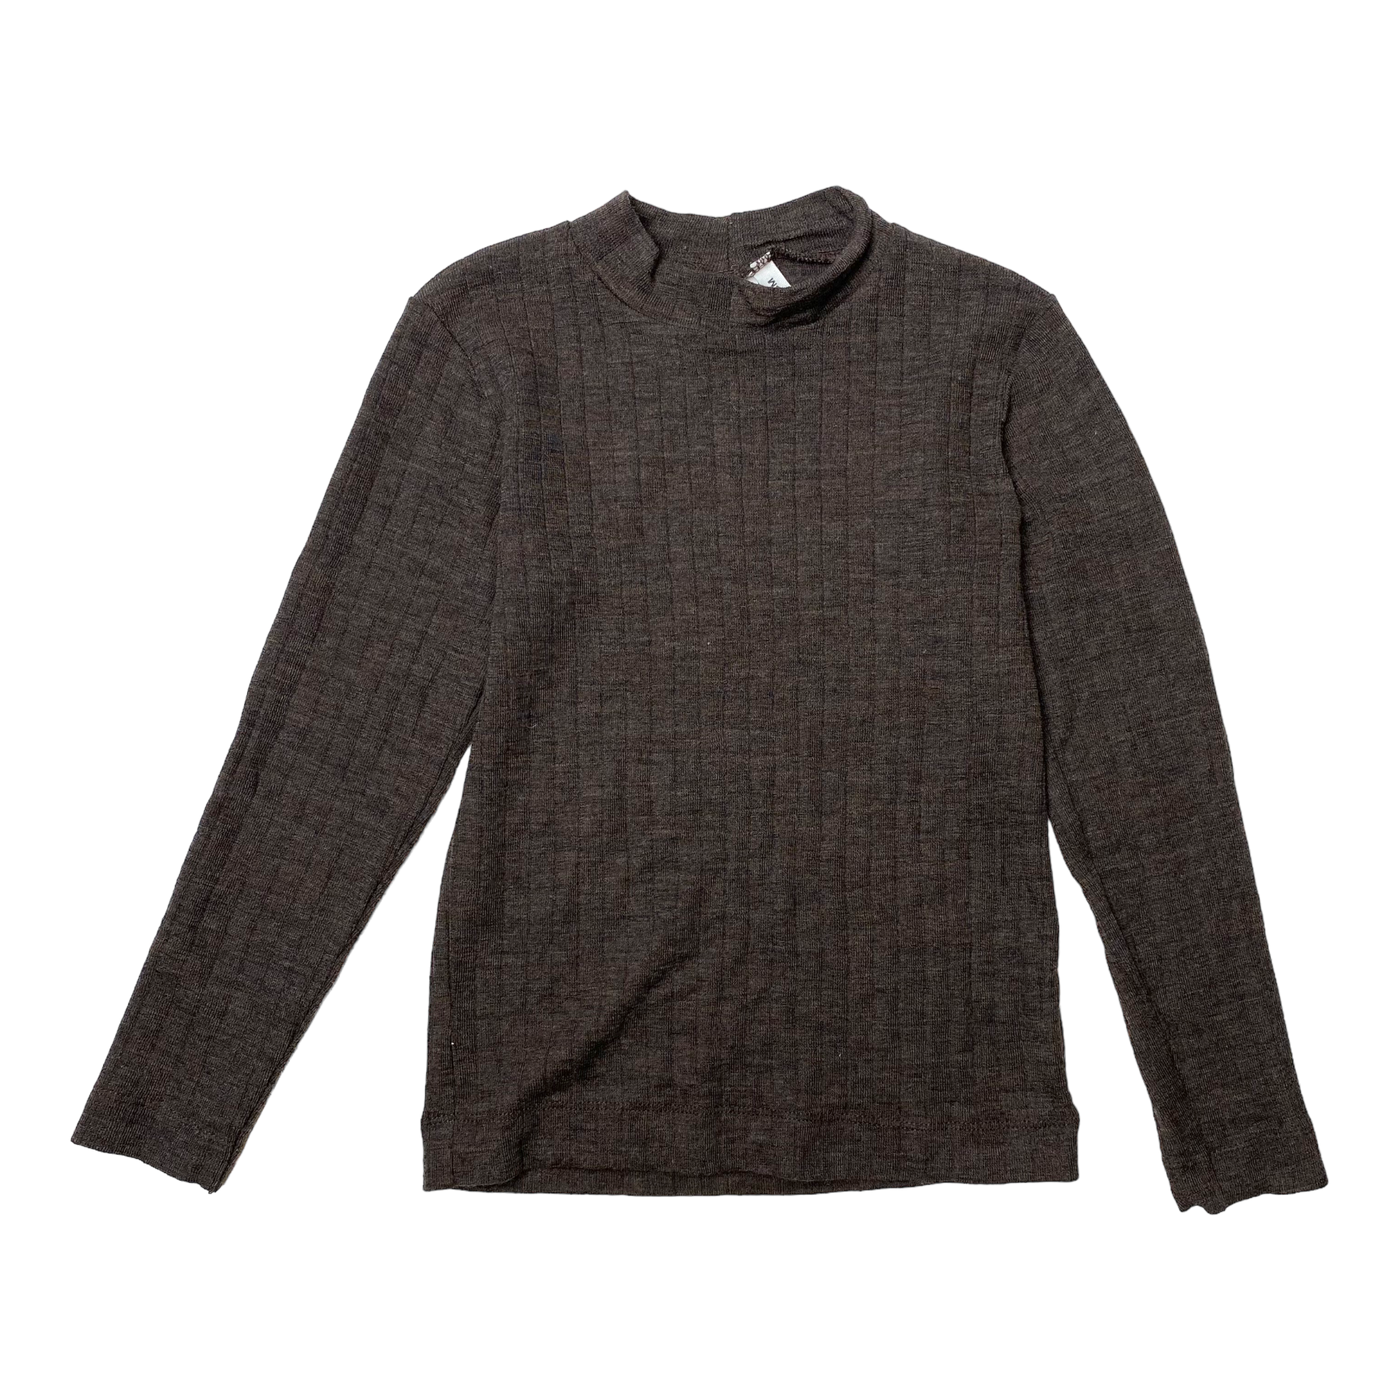 Mainio merino wool shirt, coffee | 110/116cm